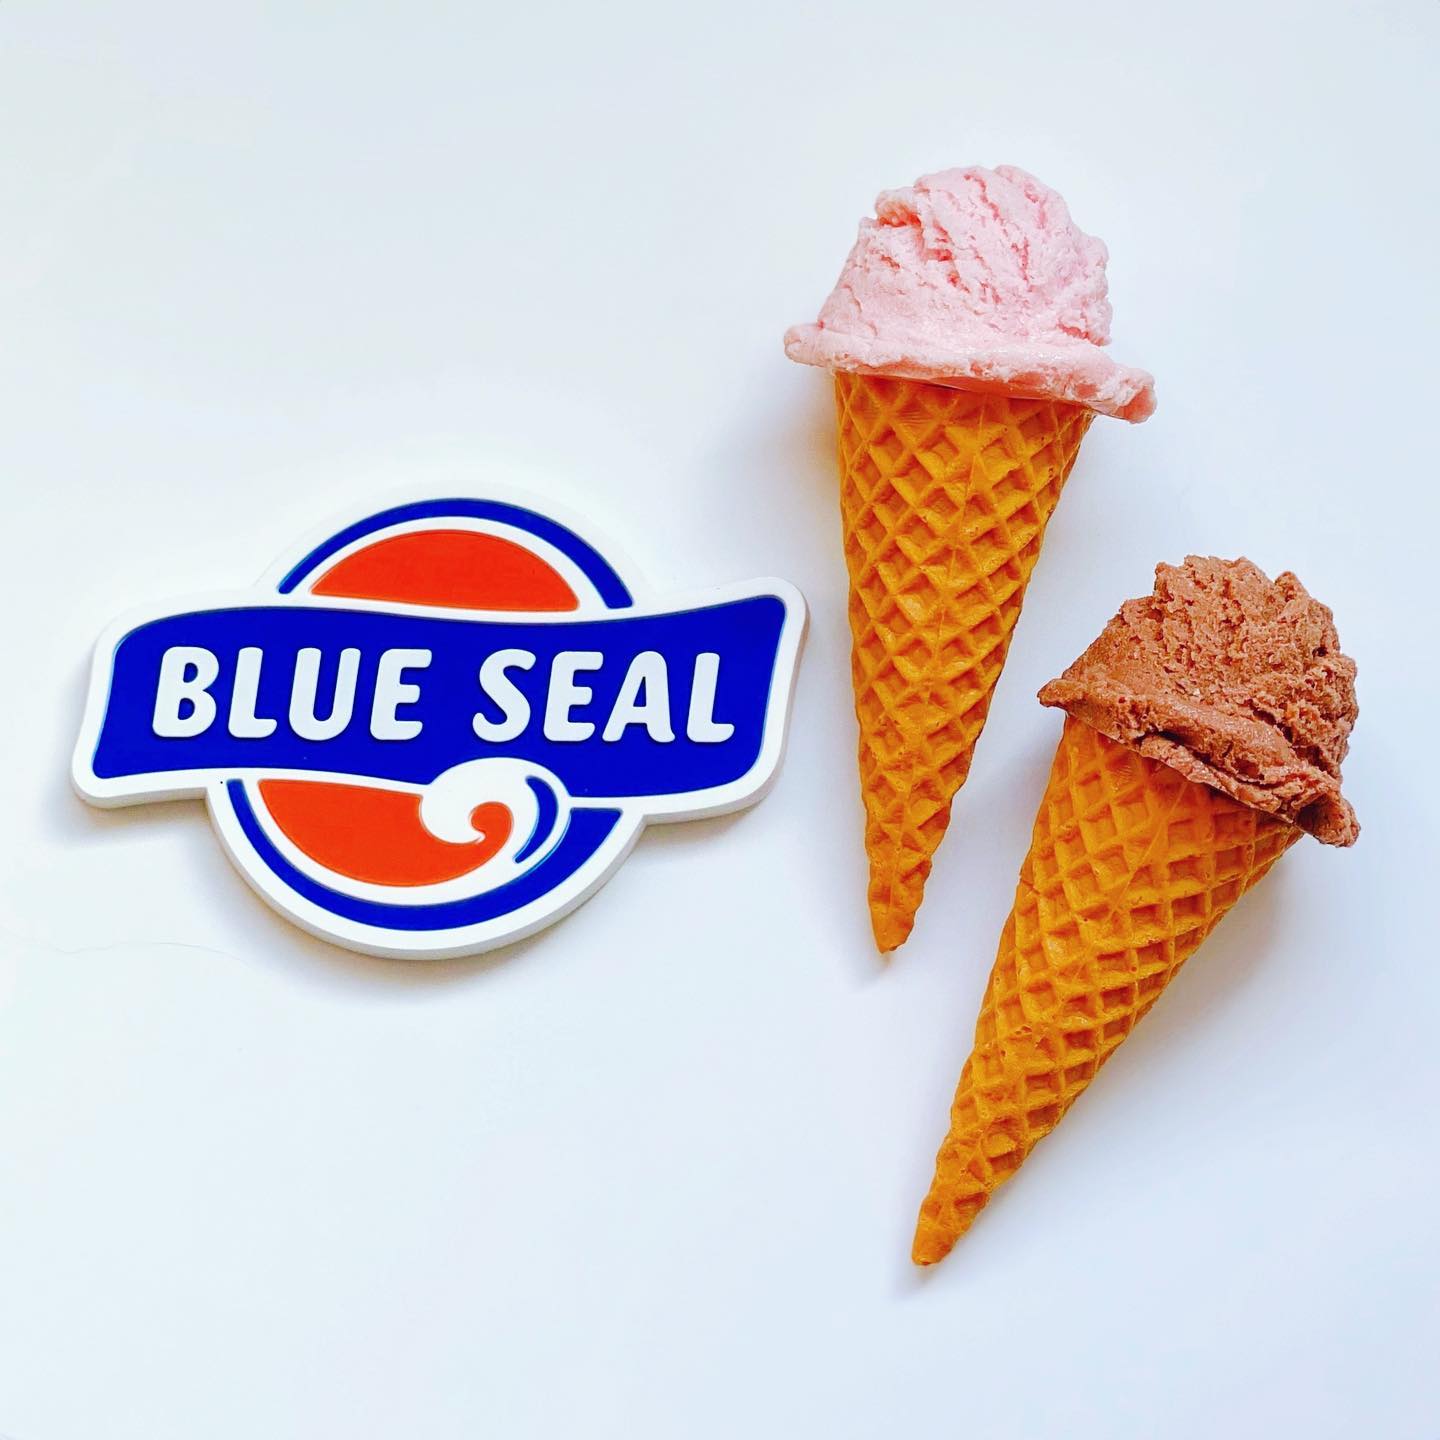 .
BLUE SEALアイスクリームといえば、巷ではケンエレファントから発売になったミニチュアがHOTですが、マグネット付きフィギュアが含まれていないのが残念。

こちらはみなとみらいのBLUE SEALで買ったロゴマグネットと、関係ないのになんだかBLUE SEALっぽい「まいづる」のアイスクリームマグネットです。

最近は47都道府県のご当地マグネットを集めた「別冊 収集百貨」を作りたいな〜なんて考えながら、“ご当地＆お土産”ぽいマグネットをチェックしてます。

#magsterマグネットコレクション#マグネット#マグネットコレクション#ミニチュアマグネット#ご当地マグネット#お土産マグネット#おみやげマグネット#アイスクリームマグネット#ロゴマグネット#食品サンプルマグネット#食べ物マグネット#本物そっくり#本物そっくりマグネット#マグネット集め#マグネット#溜めっこどうぶつ#食べられません#ブルーシール#ブルーシールアイス#沖縄#まいづる#magnet#fridgemagnet#souvenirmagnet #magnetlove#donoteat#blueseal#okinawa